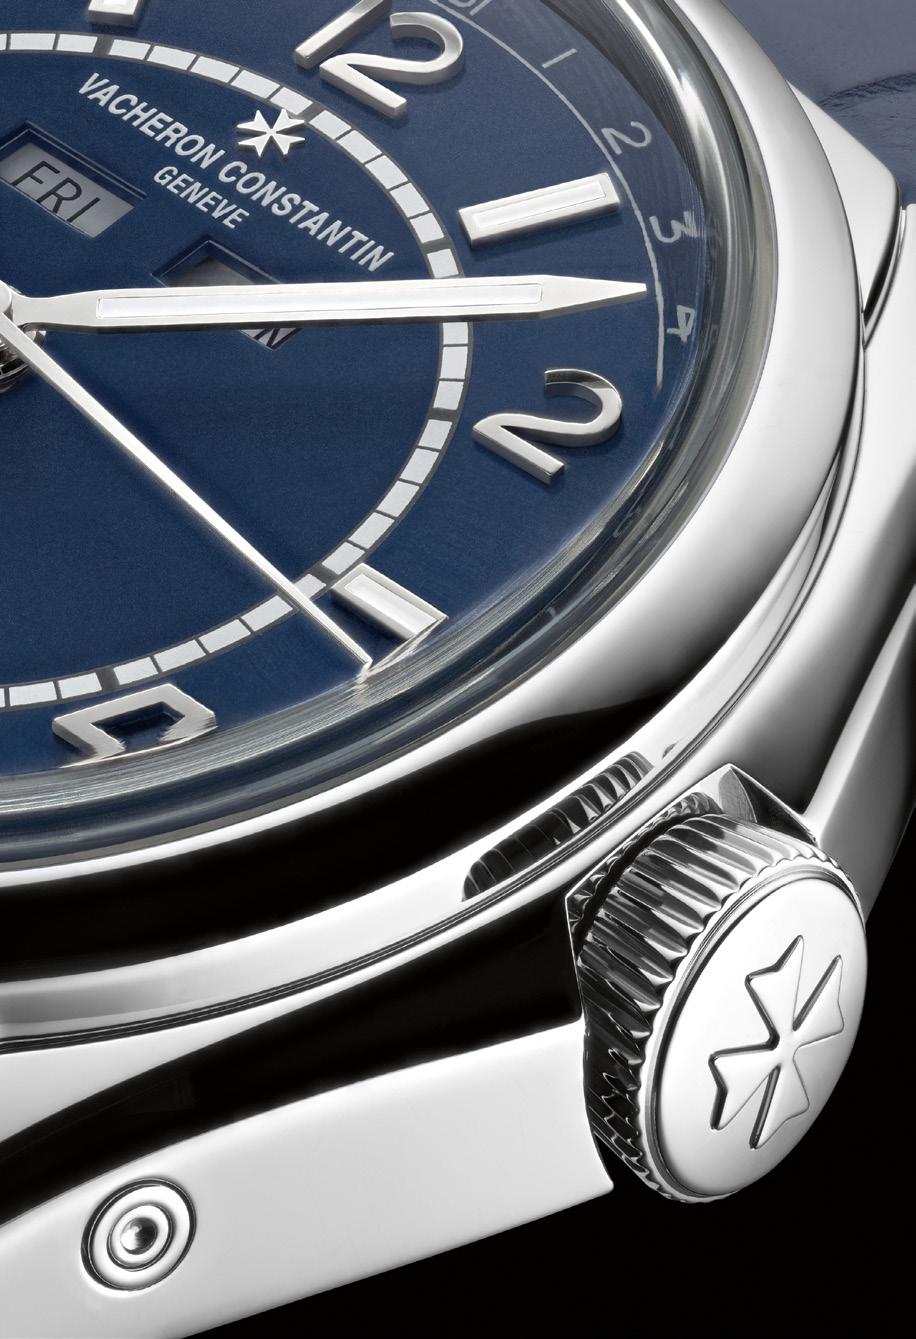 Uma nova cor de mostrador: azul petróleo Um estilo retro contemporâneo para um relógio concebido para o uso quotidiano.